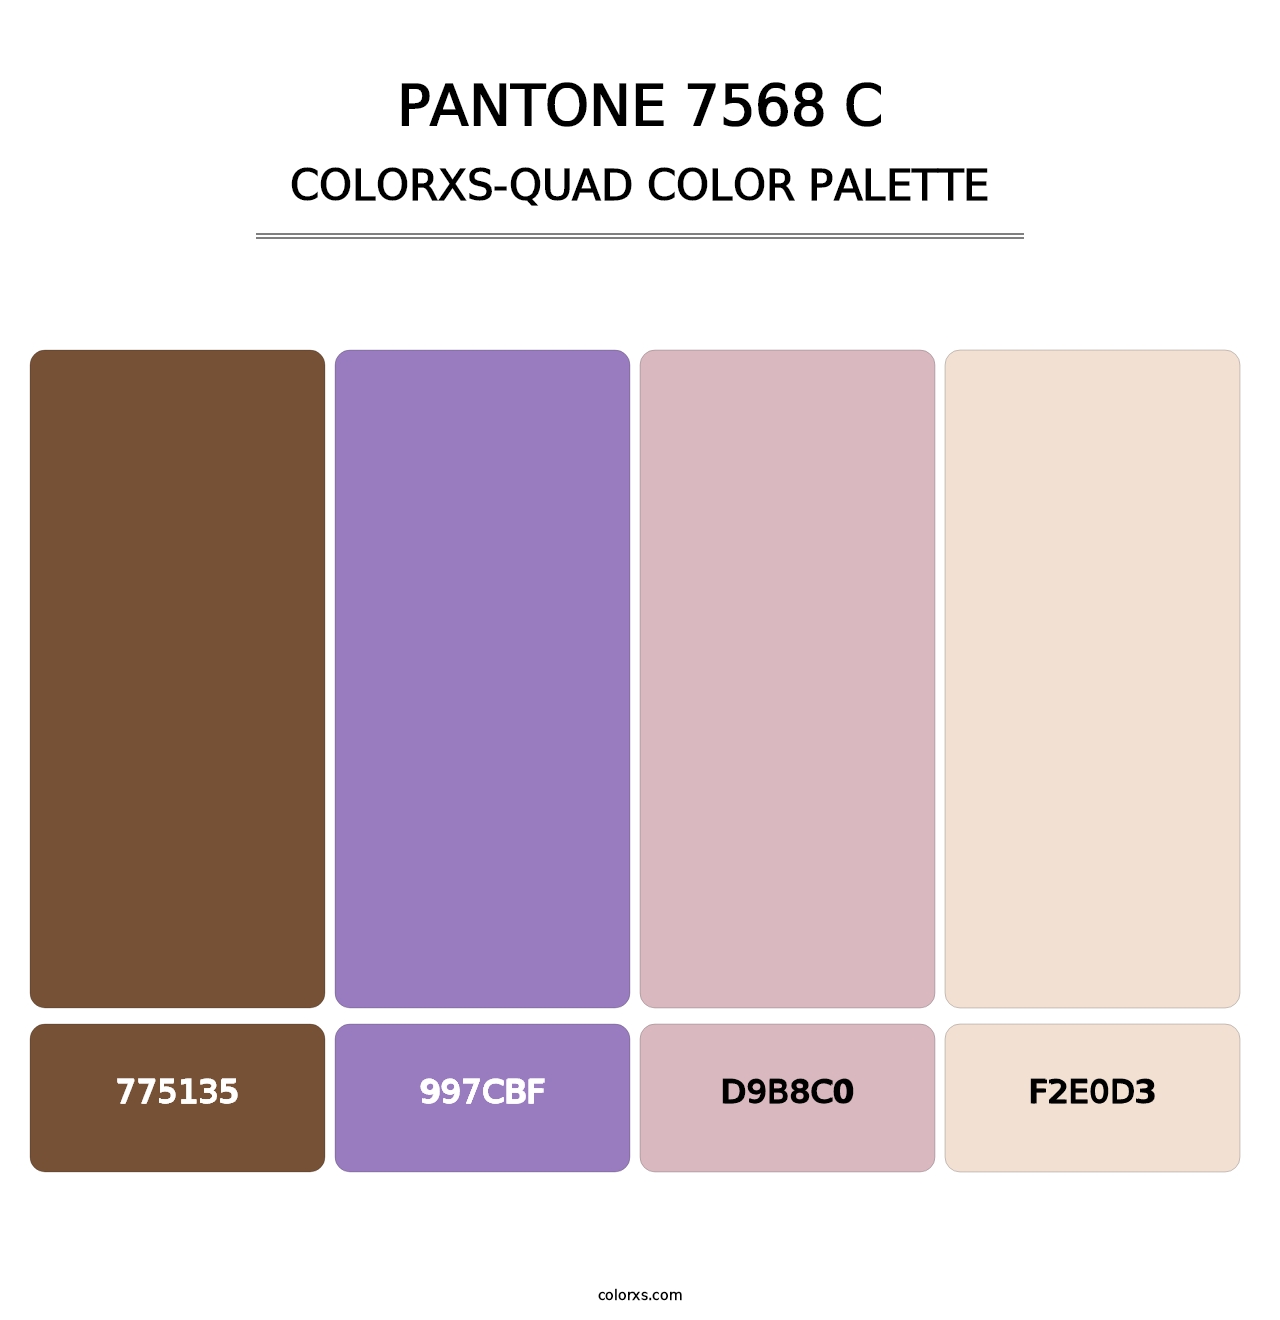 PANTONE 7568 C - Colorxs Quad Palette